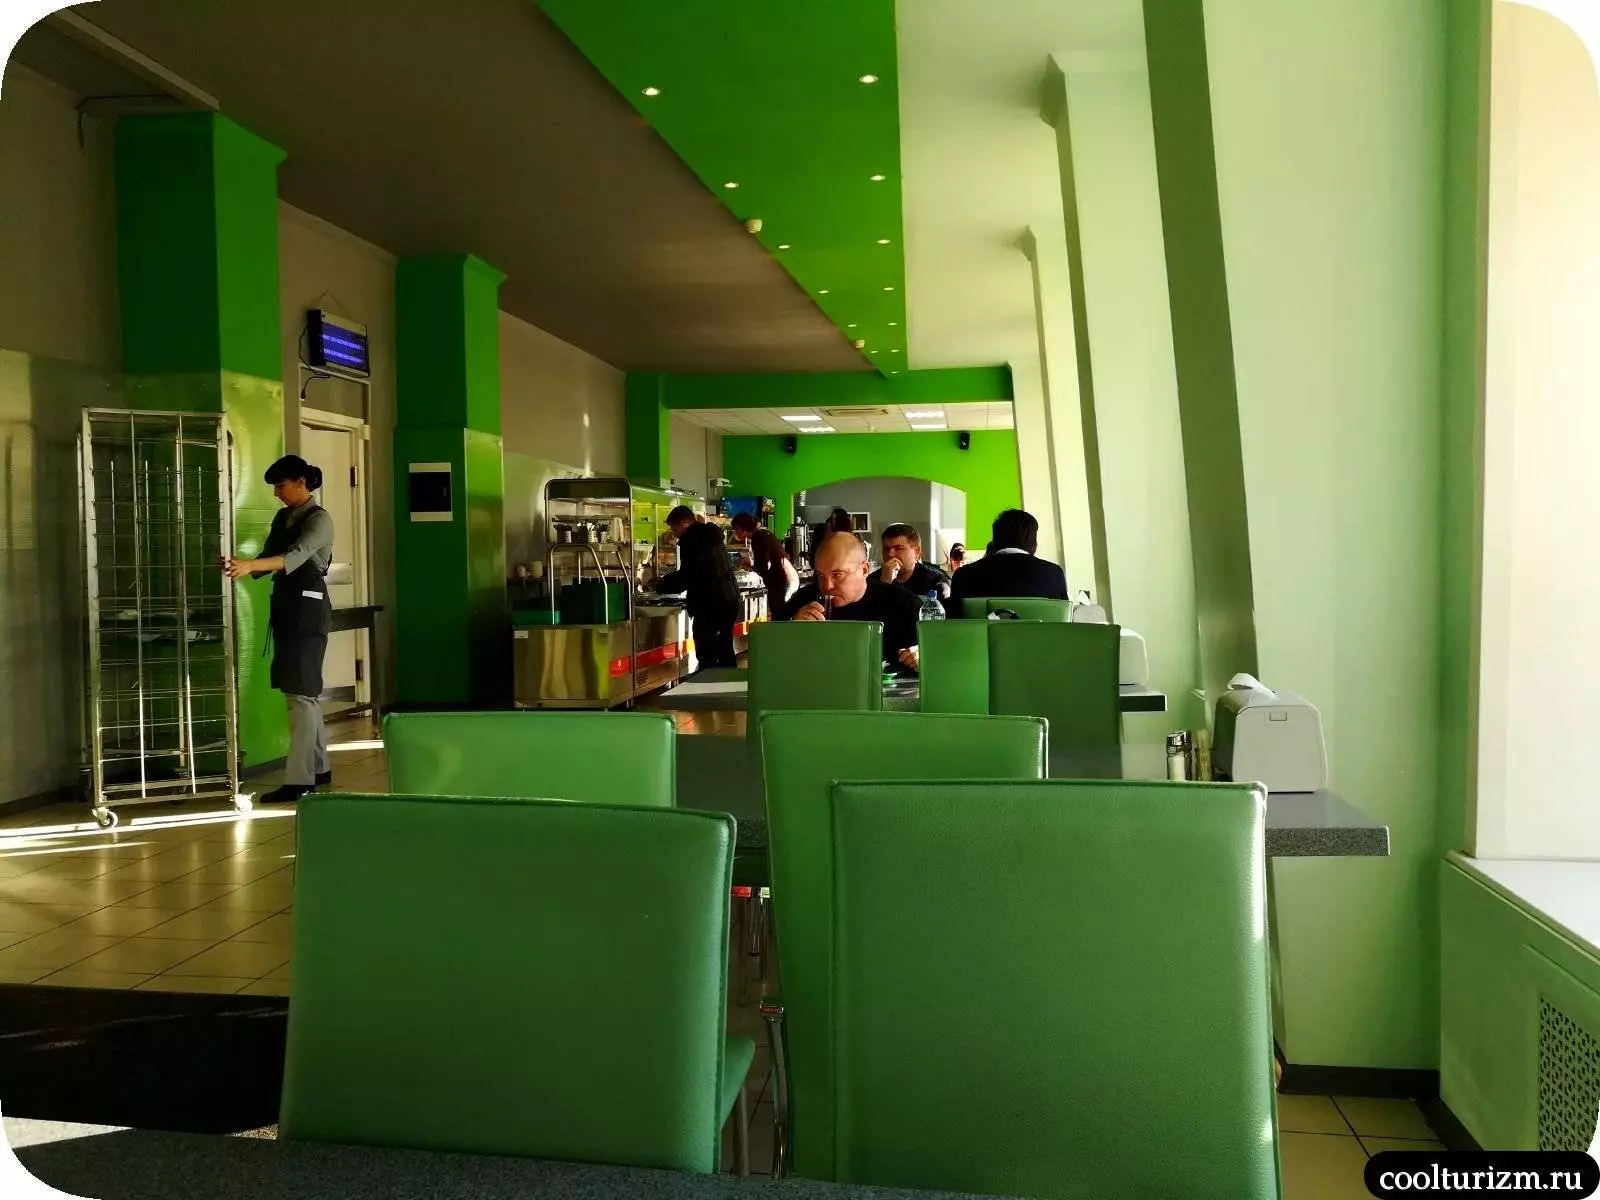 Где недорого поесть в аэропорту домодедово: кафе и фастфуд, рестораны